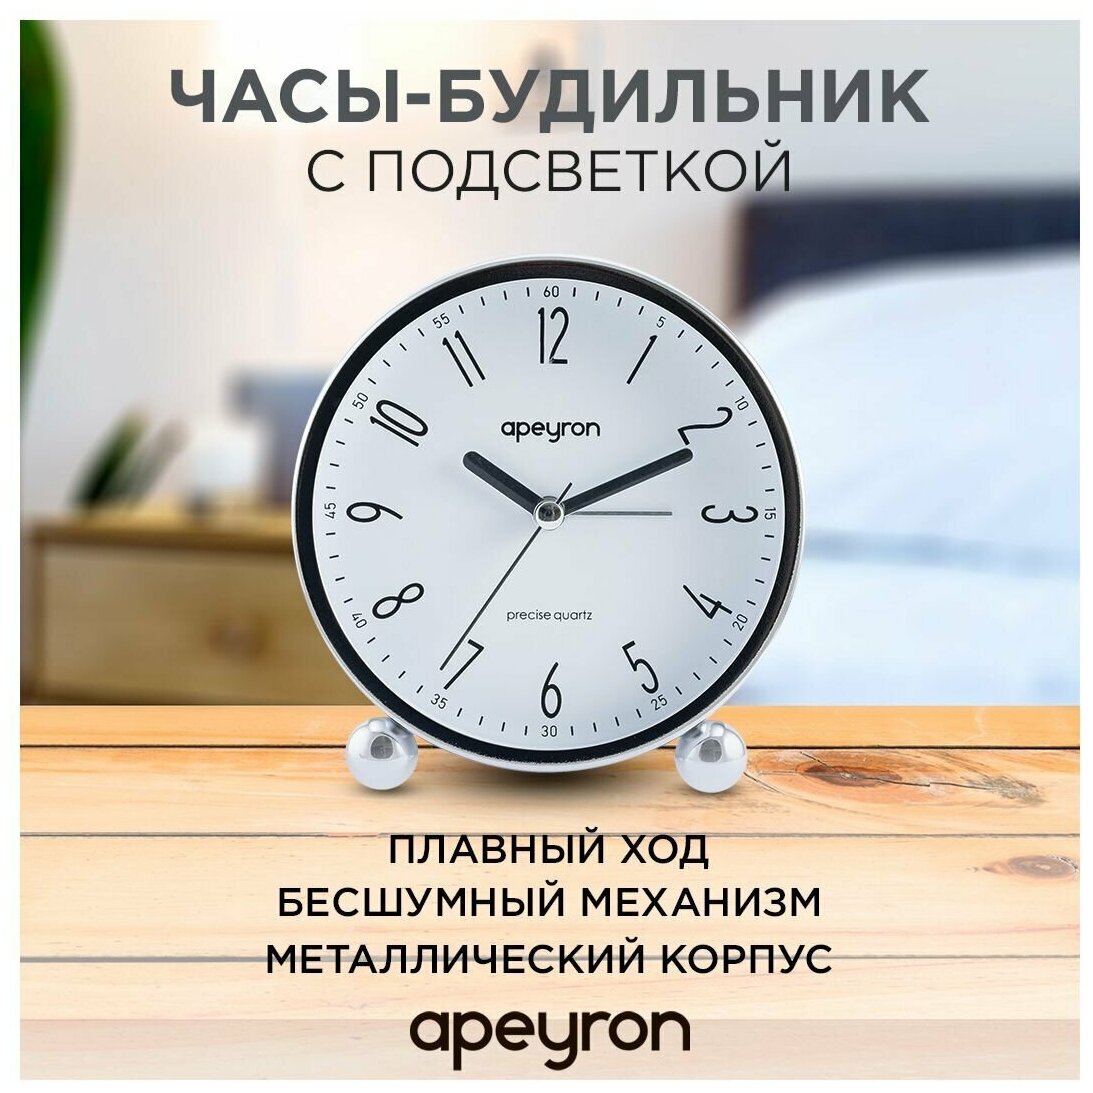 Часы-будильник с подсветкой в форме круга Apeyron d-11.5 см арабский циферблат бесшумный механизм с плавным ходом хром MLT2207-519-1